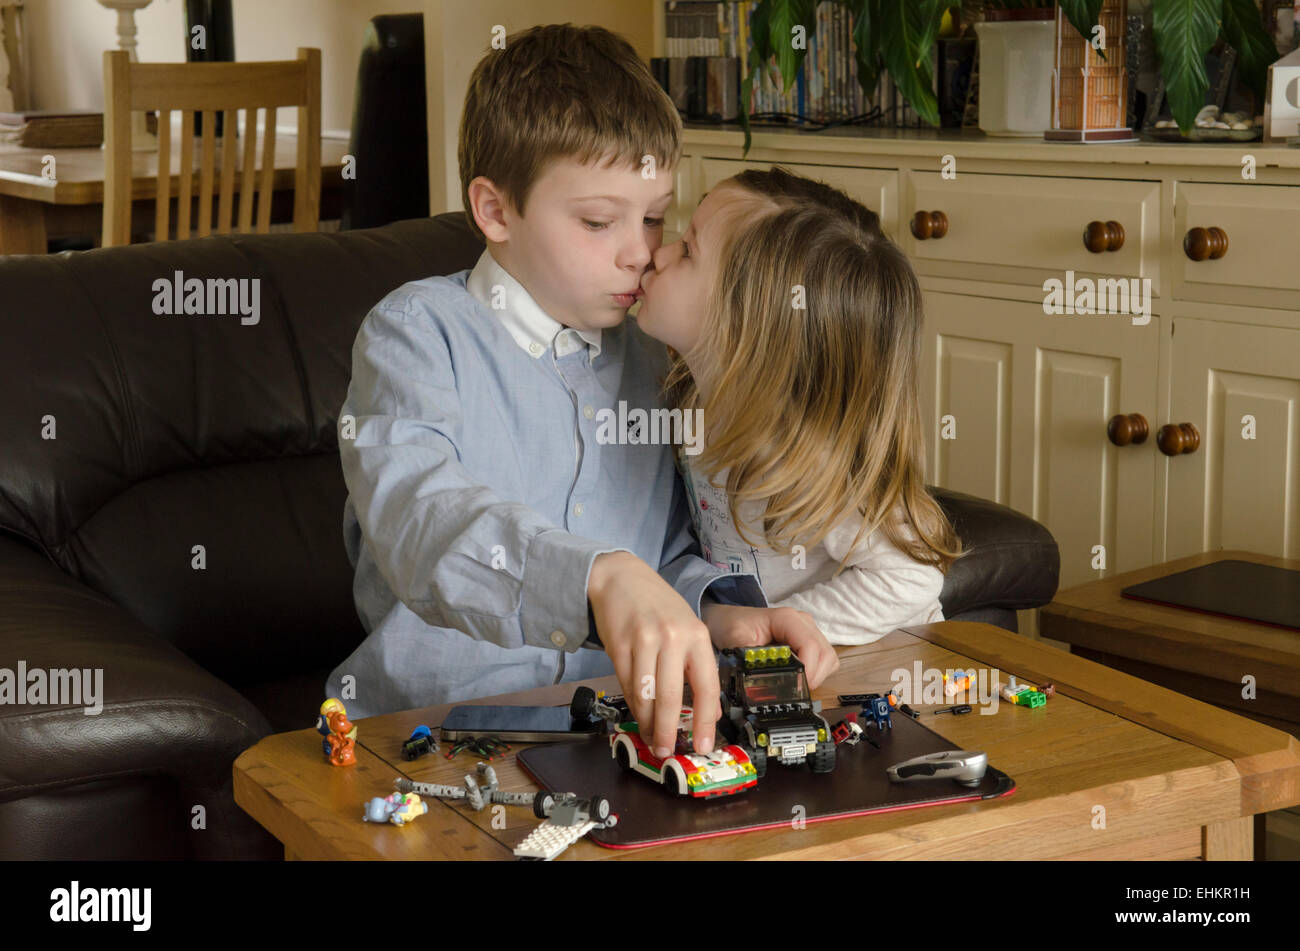 Junge, acht Jahre alt, mit Schwester, spielen zwei Jahre alt, mit Lego zusammen. Mädchen küssen Junge, aber er spielt beschäftigt, UK. Stockfoto